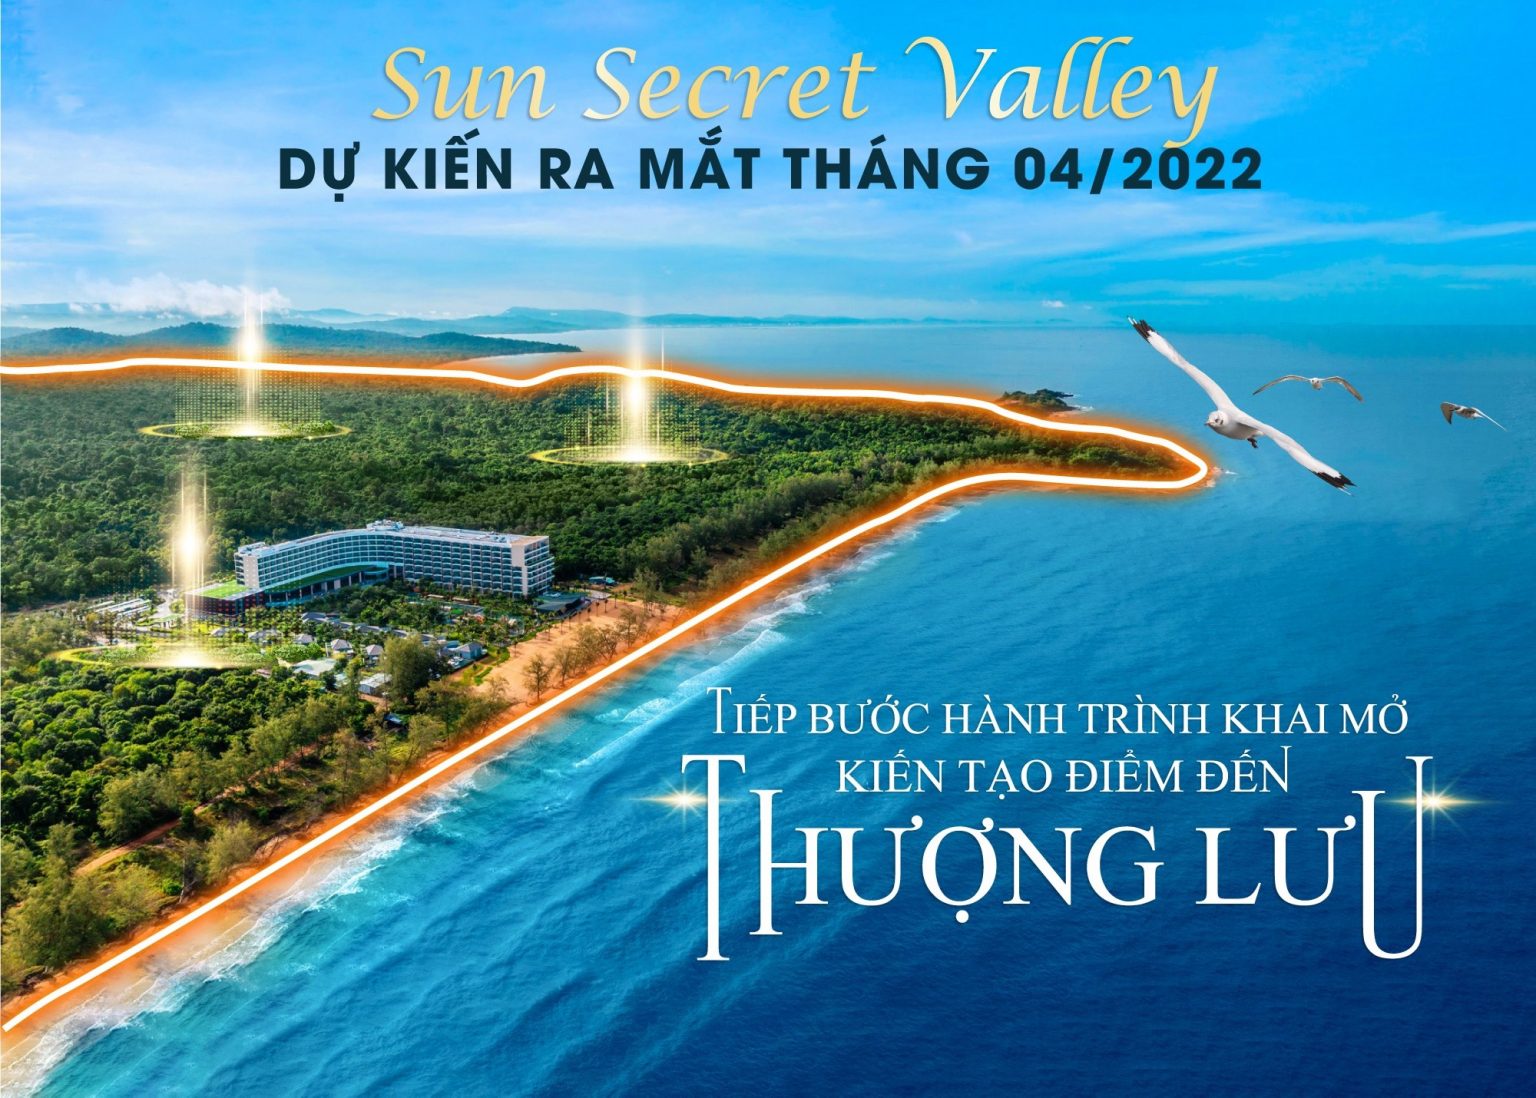 Lễ mở bán chính thức tại dự án Sun Secret Valley